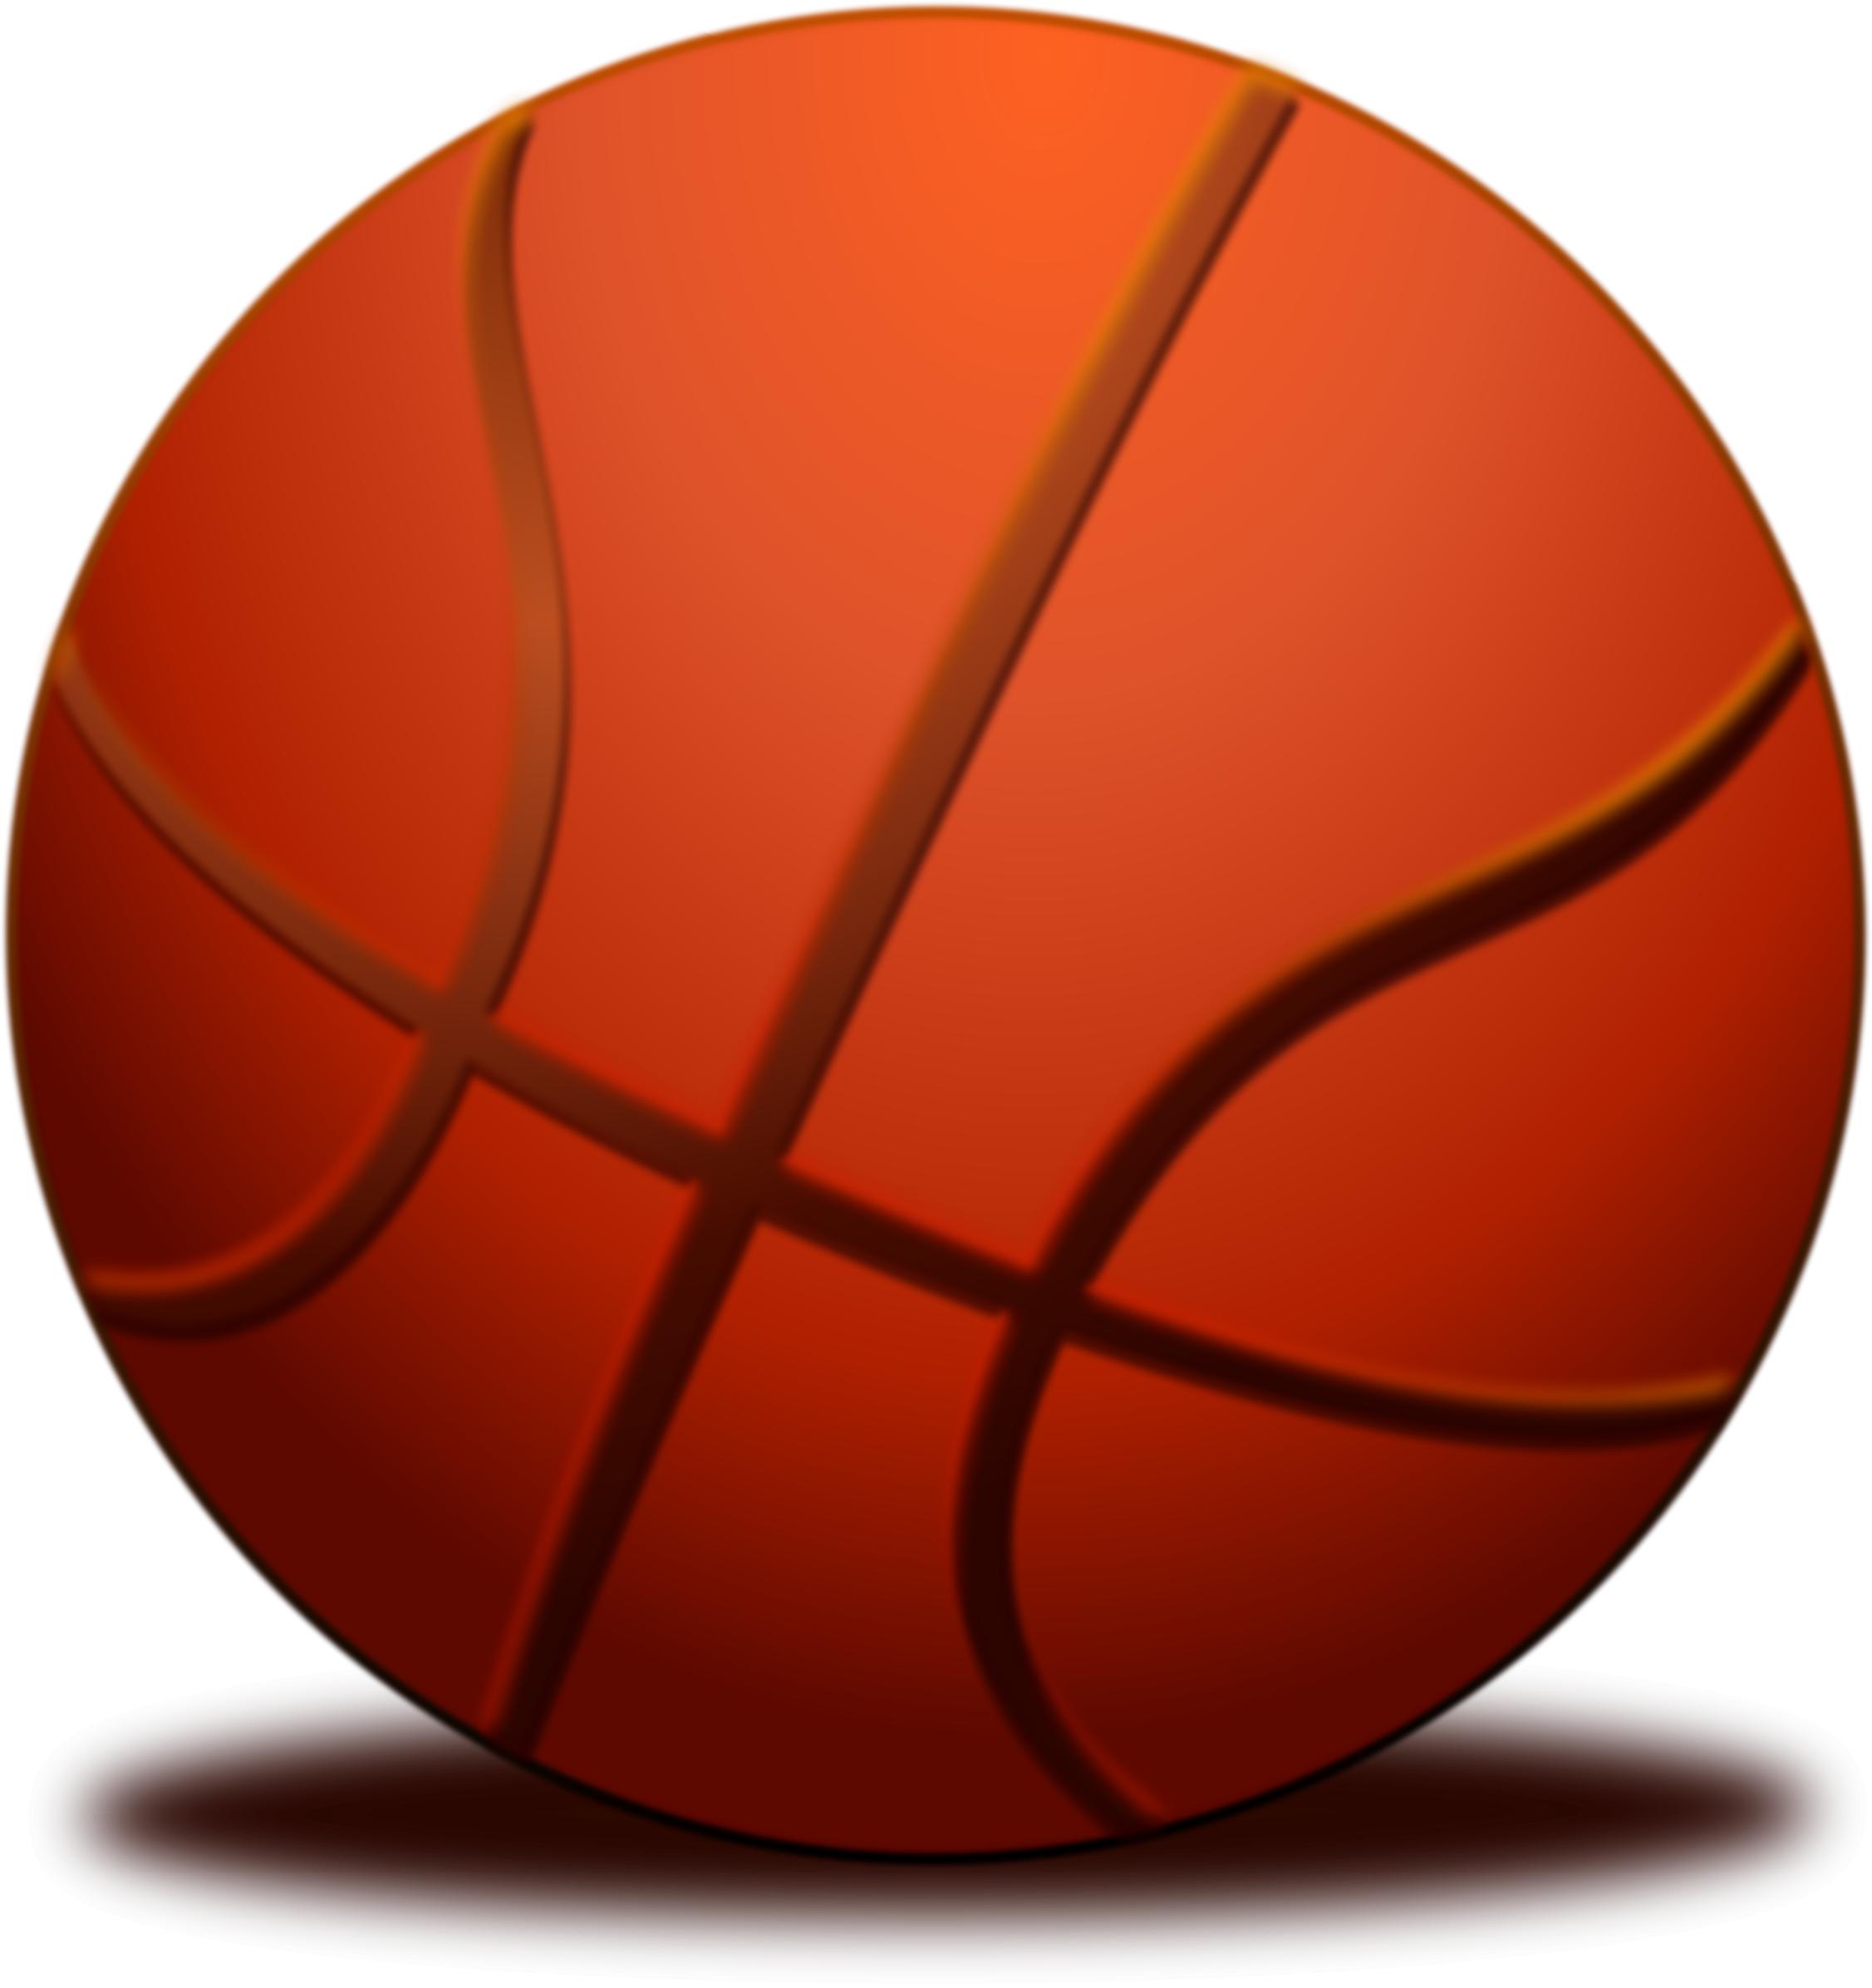 Ball Basketball PNG icons